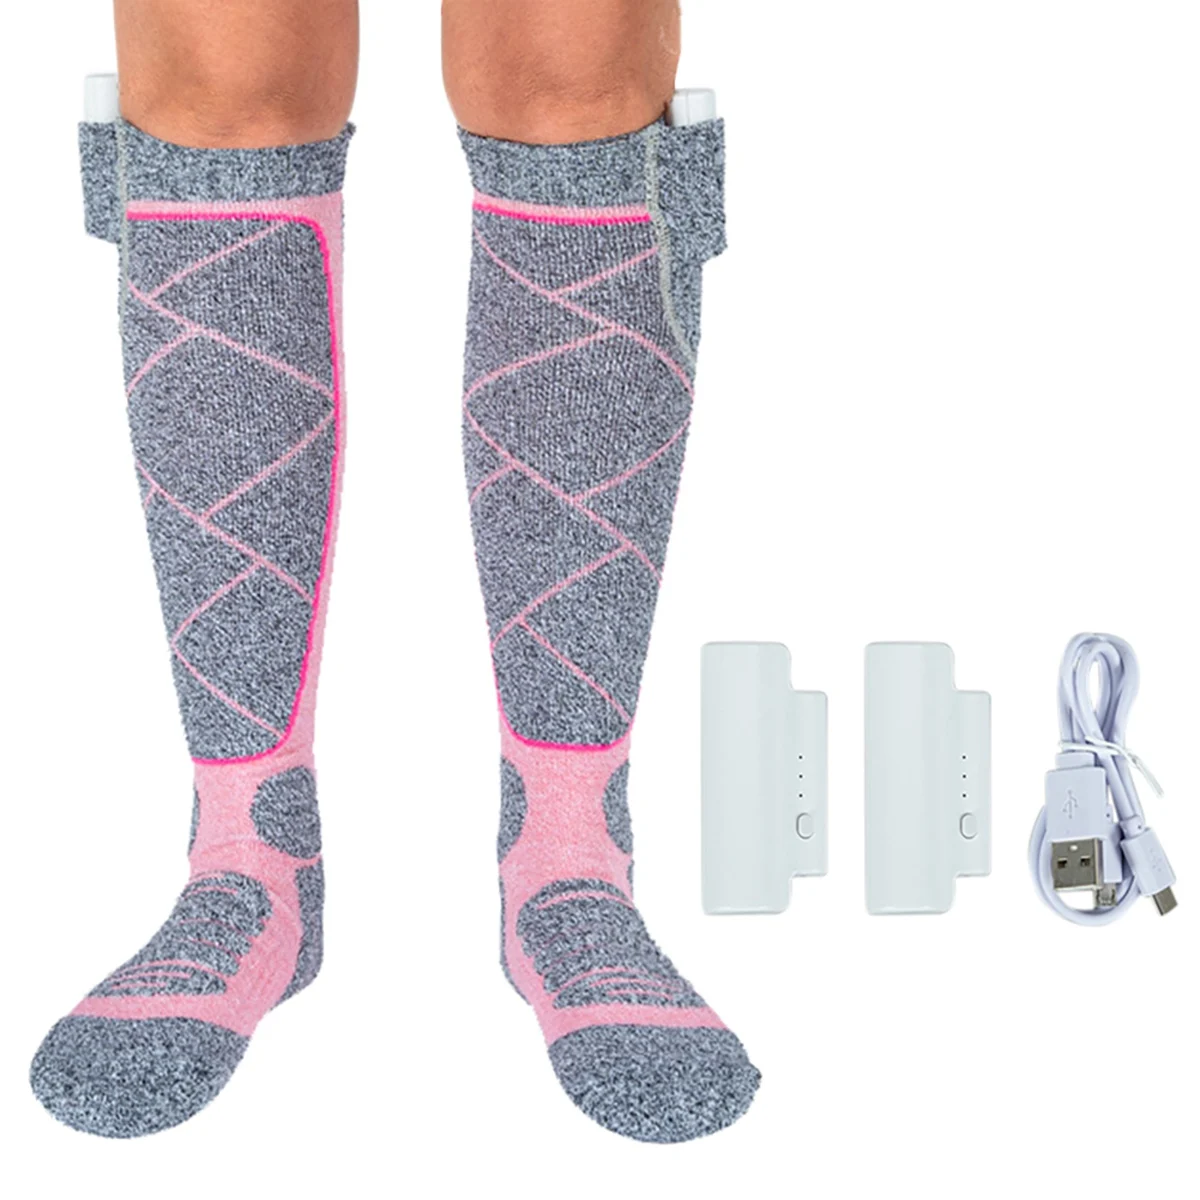 Зимние теплые носки для улицы, термоноски, регулируемые в 3 режимах, Эластичные удобные водонепроницаемые носки, розовый